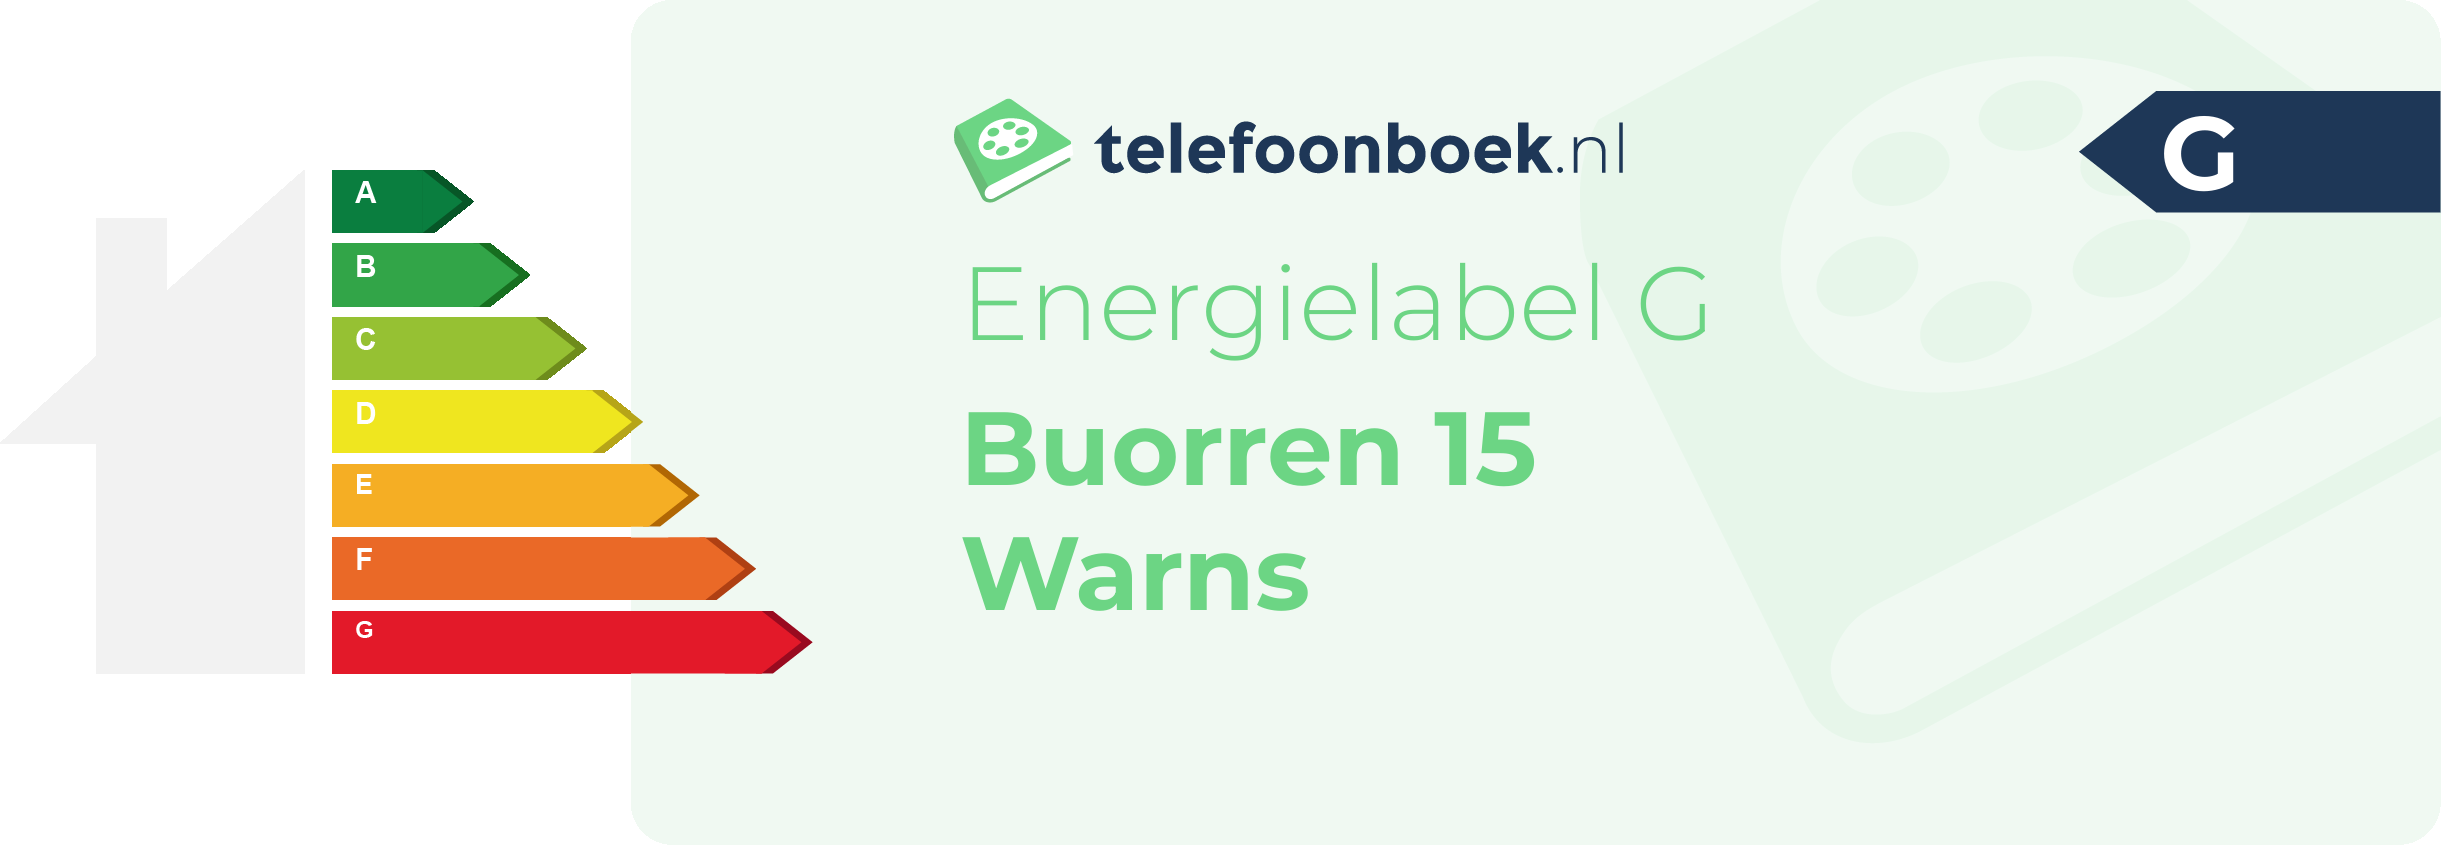 Energielabel Buorren 15 Warns